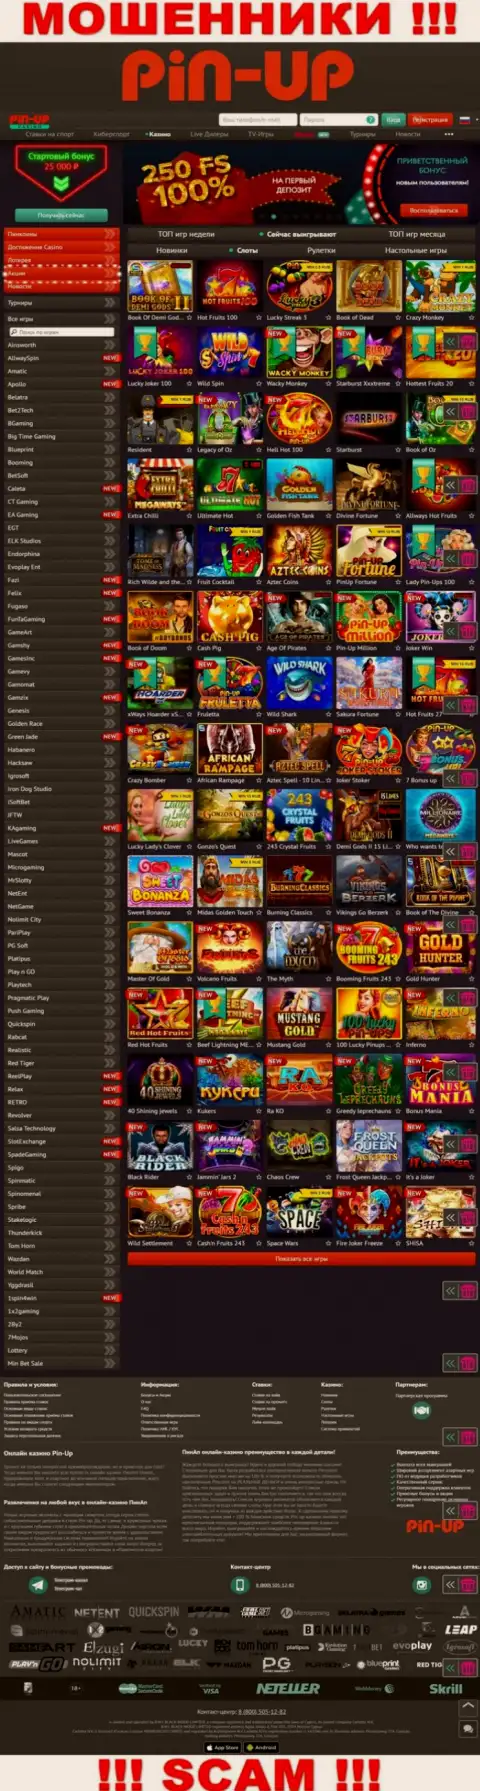 Pin-Up Casino - это официальный сайт воров PinUpCasino